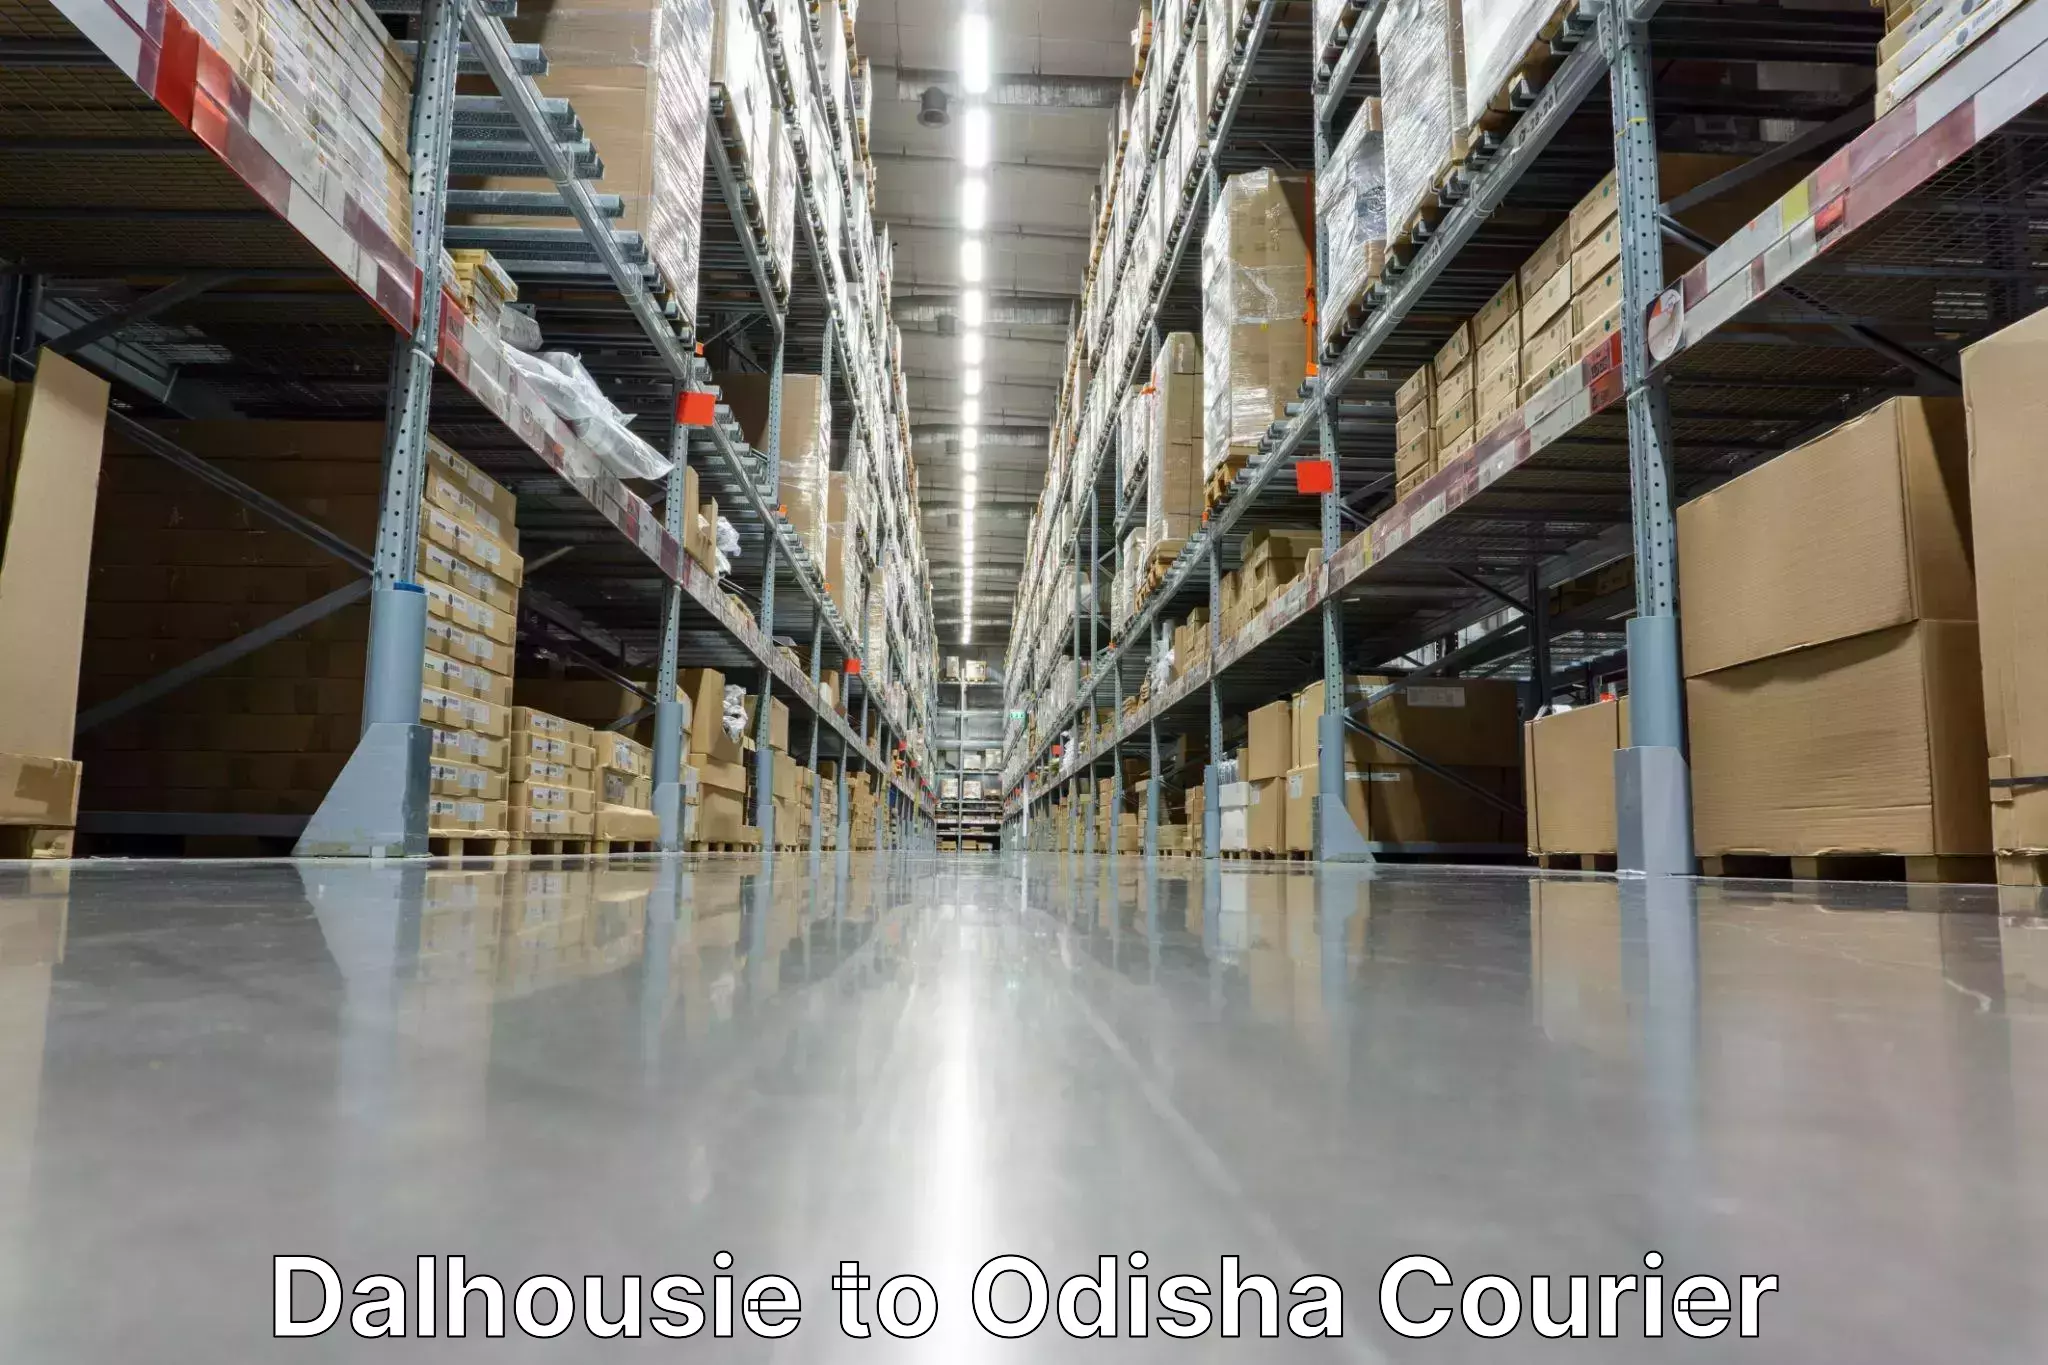 Next-day delivery options Dalhousie to Balikuda